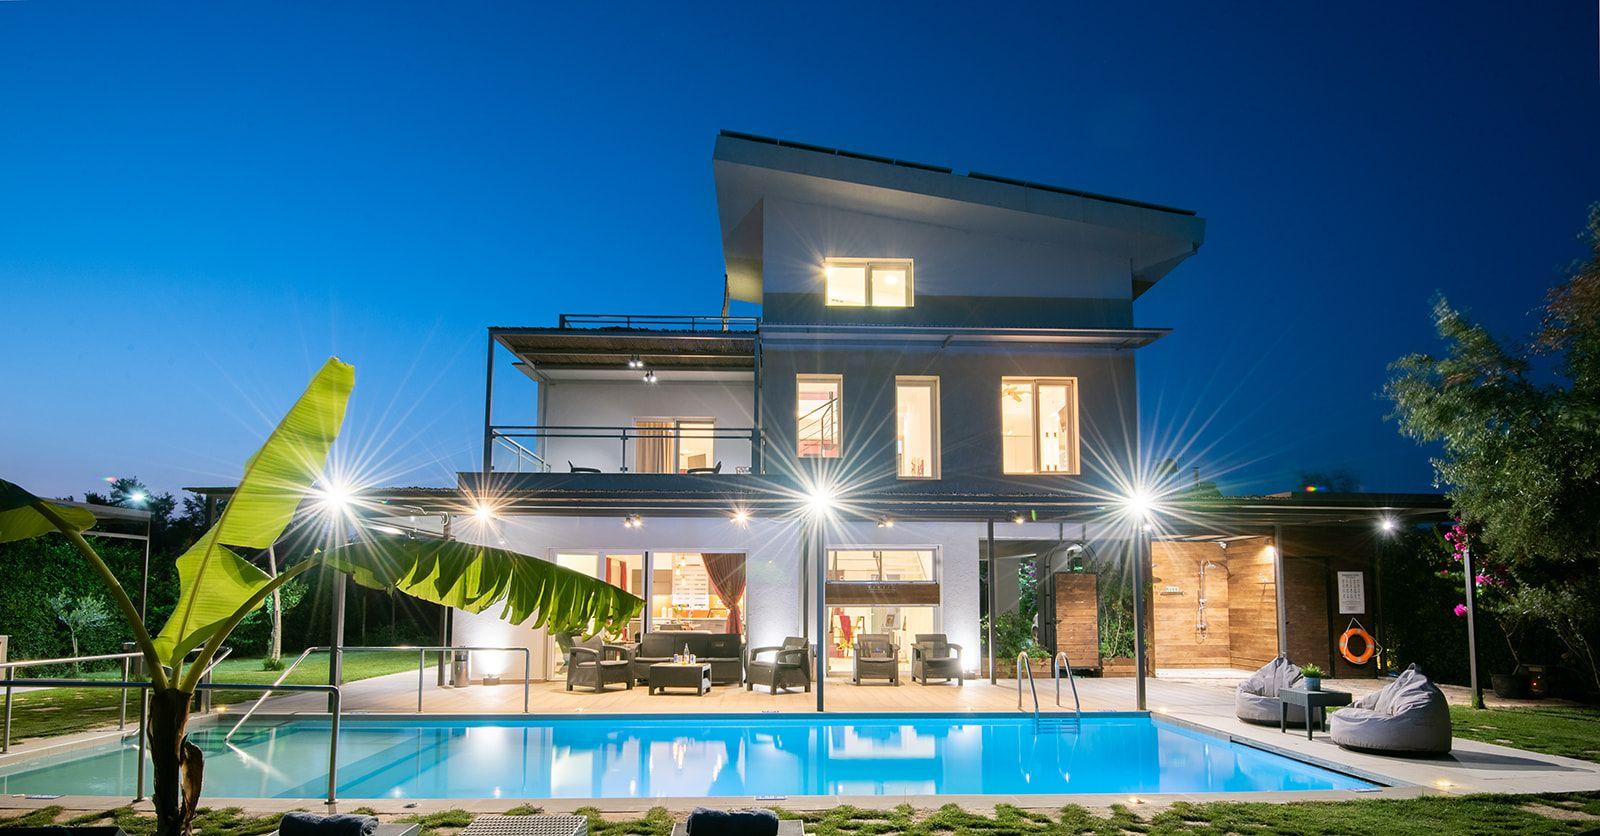 Ferienhaus mit Privatpool für 14 Personen  +  Ferienhaus in Griechenland